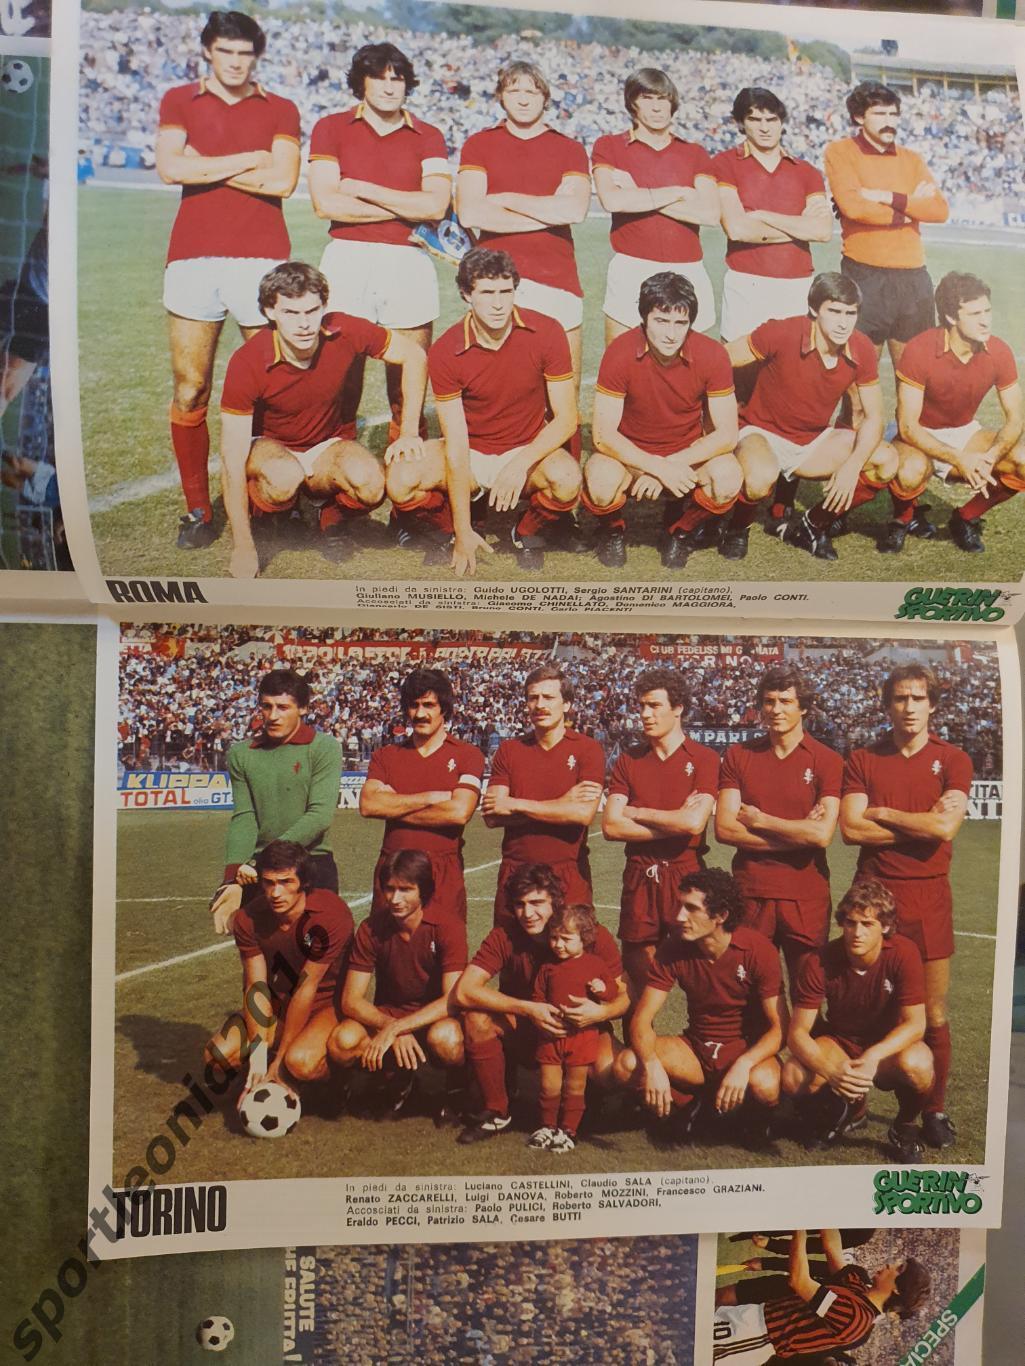 Guerin Sportivo 46/1977.12 постеров клубов высшей итальянской лиги.2 2